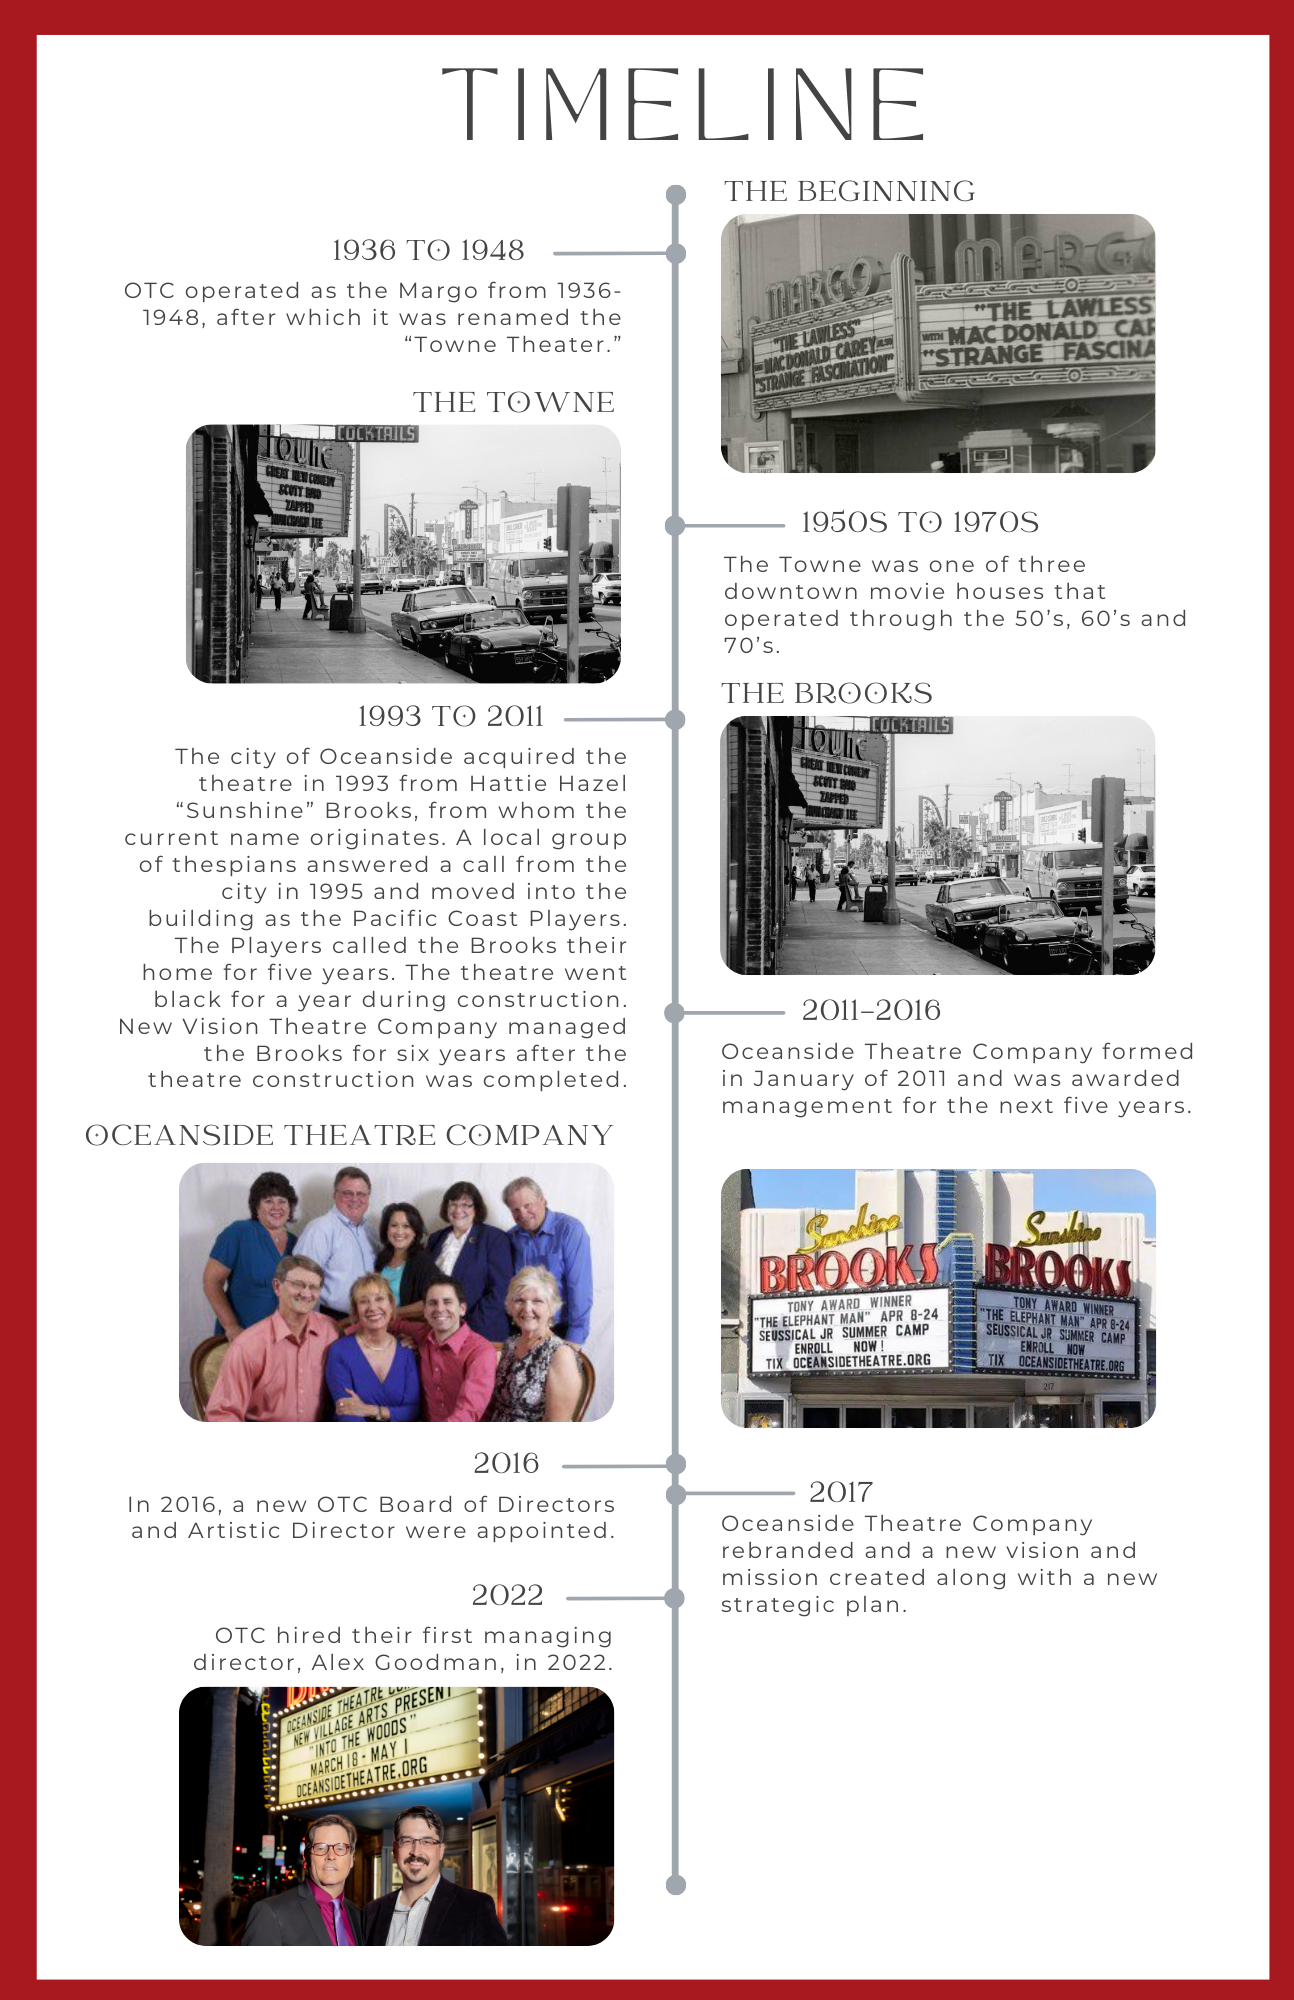 OTC - Historical timeline (11 x 17 in)